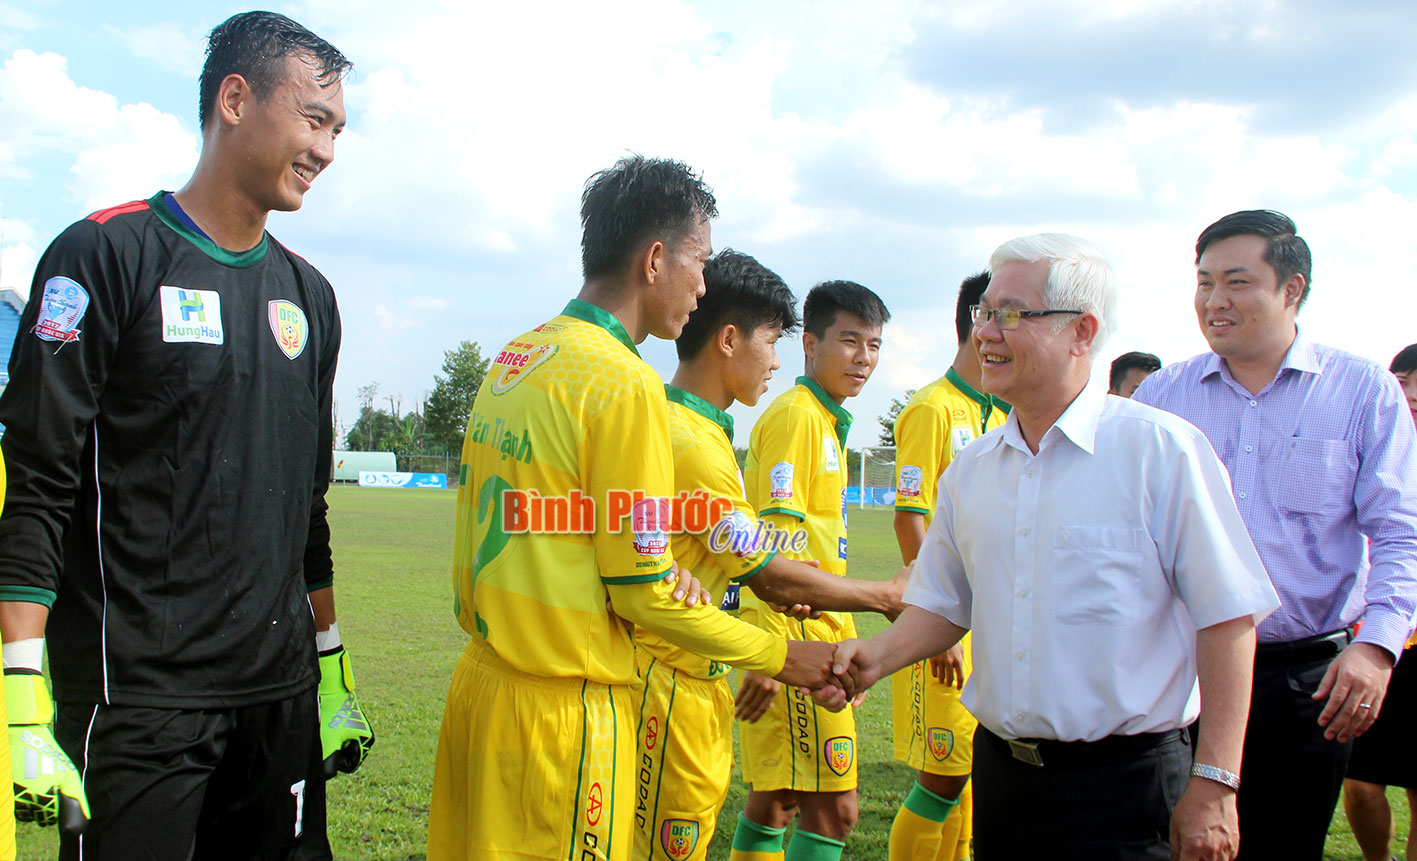 Bí thư Tỉnh ủy Nguyễn Văn Lợi bắt tay các cầu thủ 2 đội trước khi thi đấu